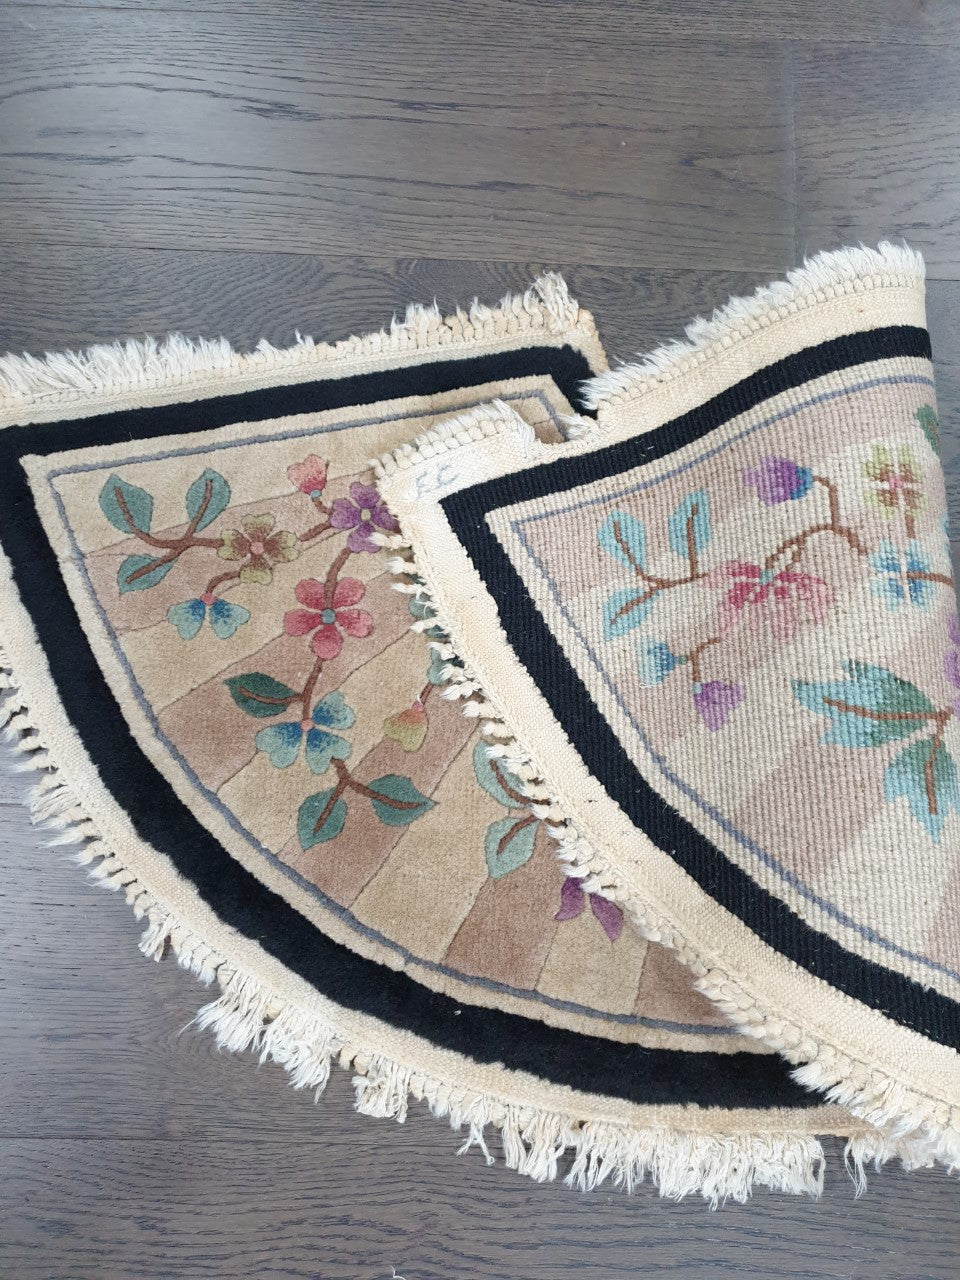 Wonderful vintage Chinese rug - Hakiemie Rug Gallery